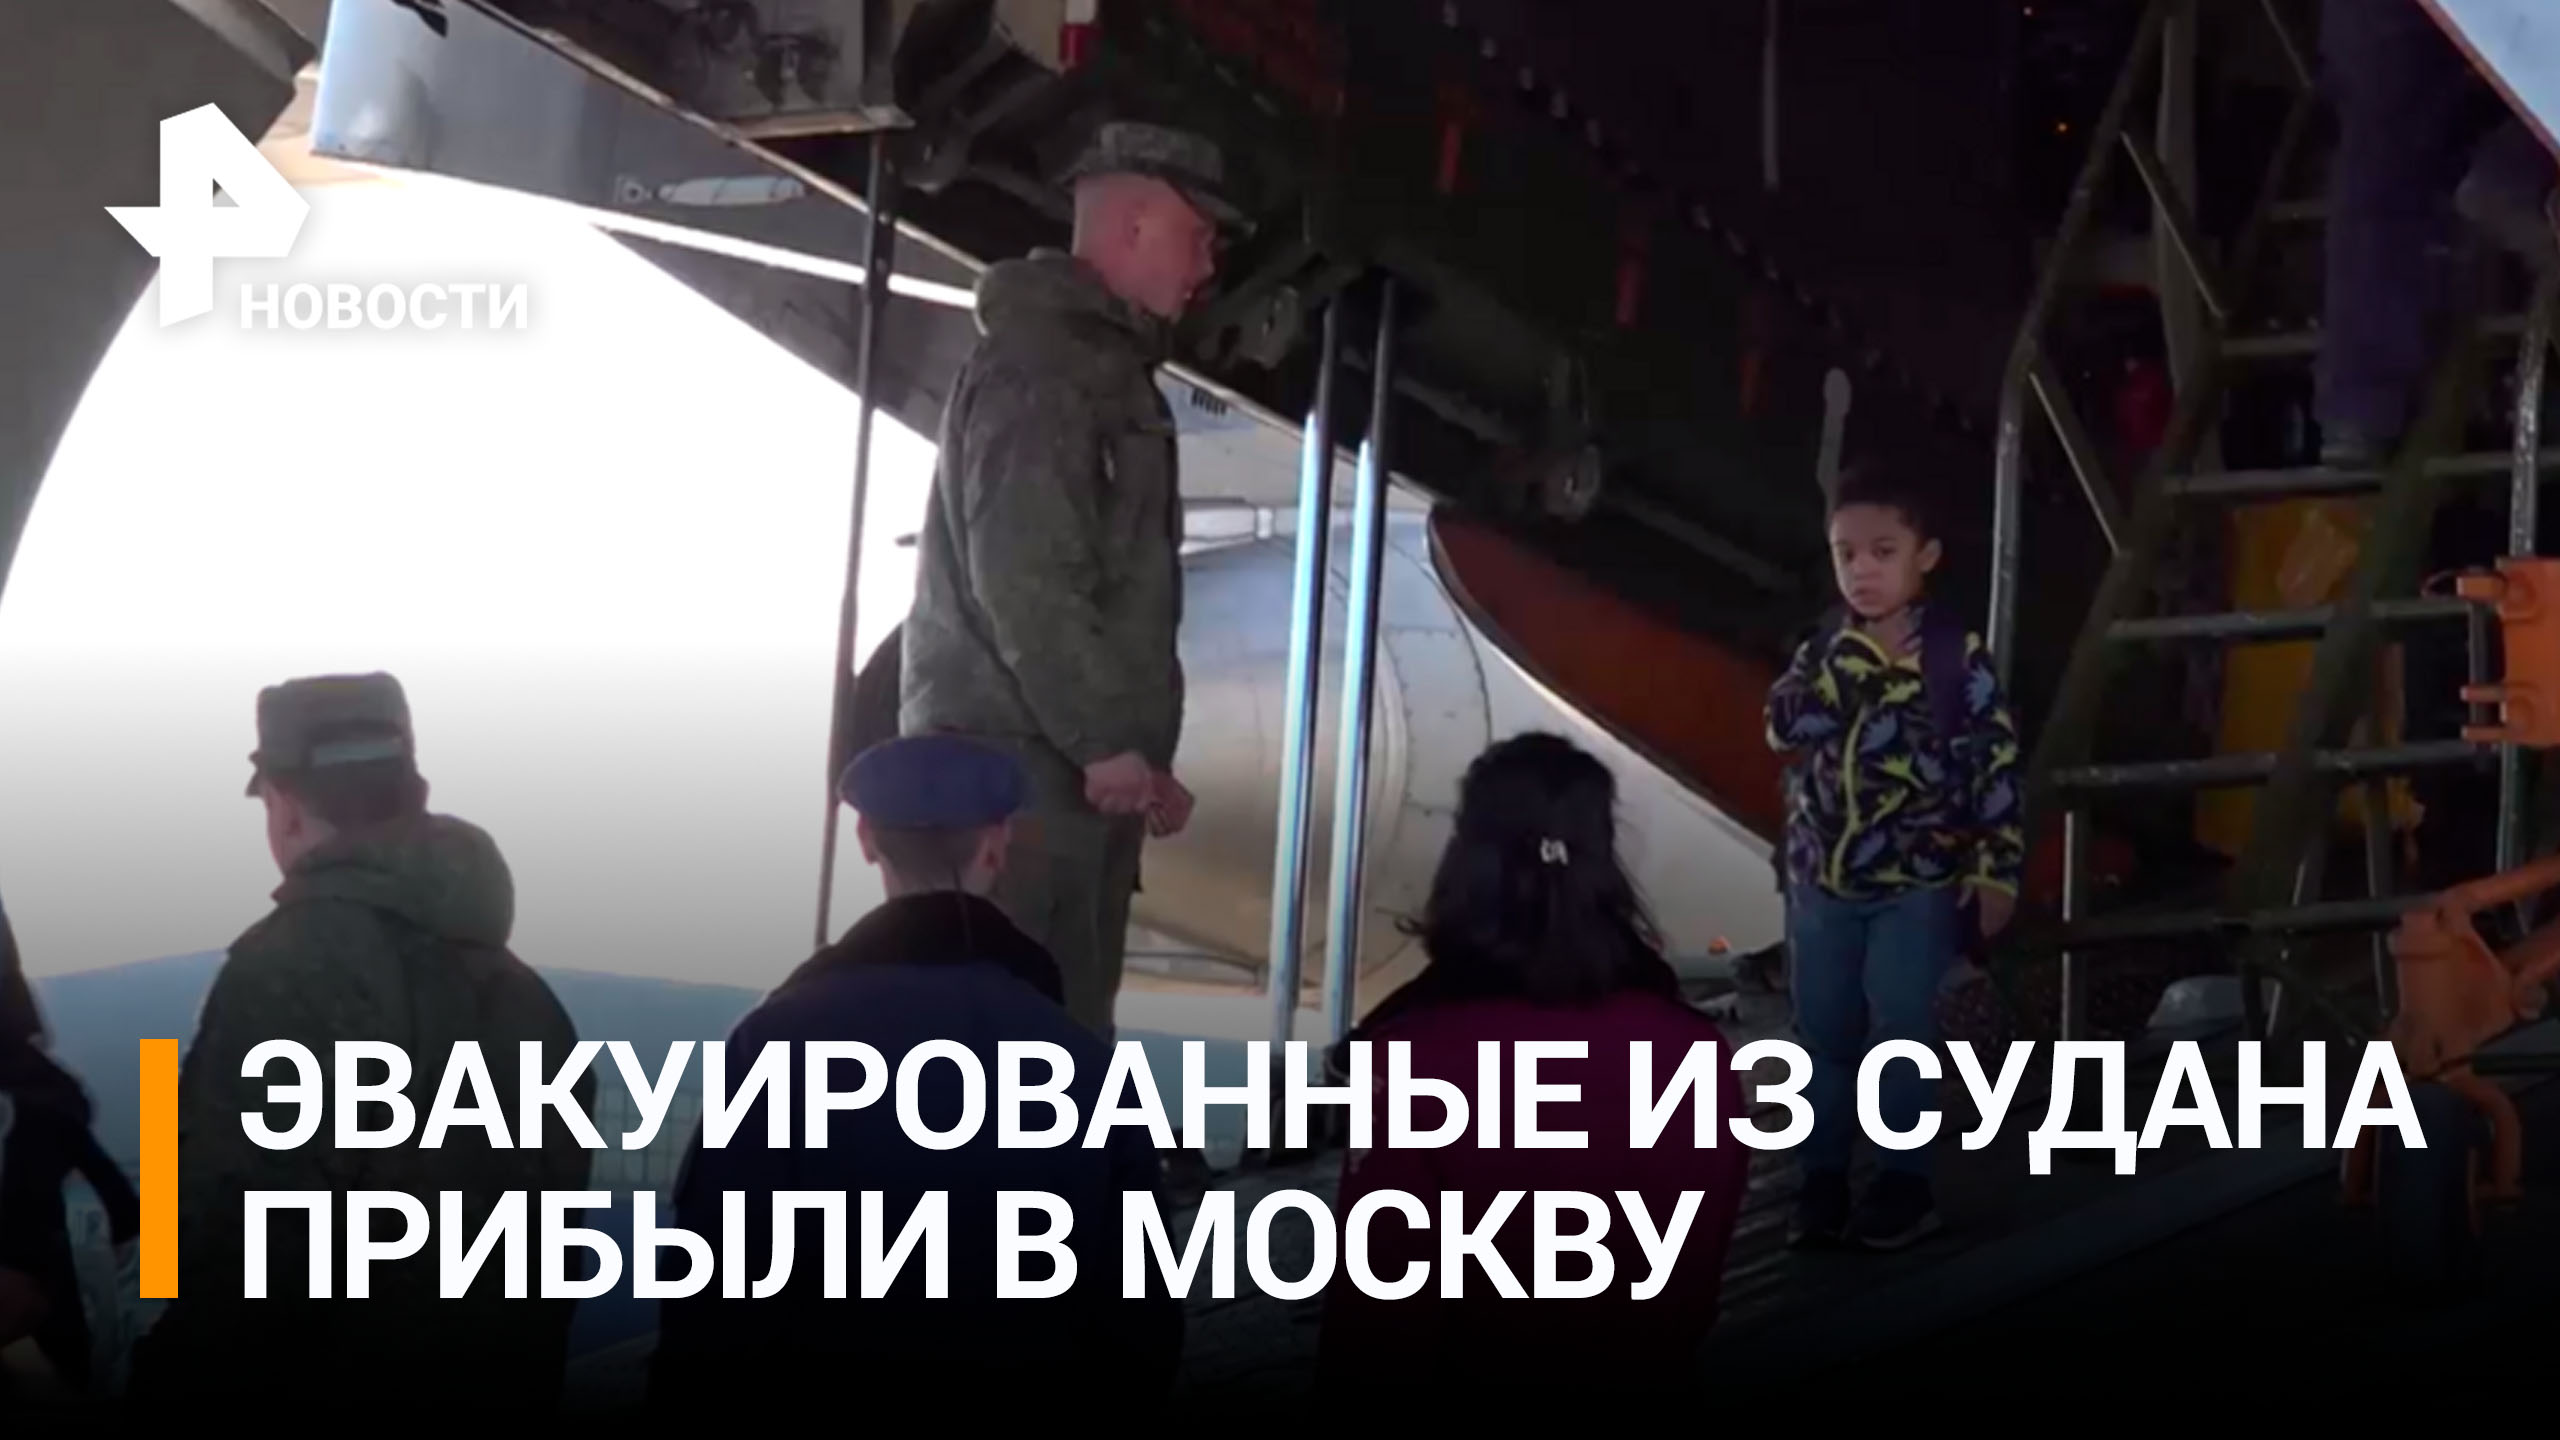 Все четыре Ил-76 с эвакуированными из Судана прибыли в Москву / РЕН Новости